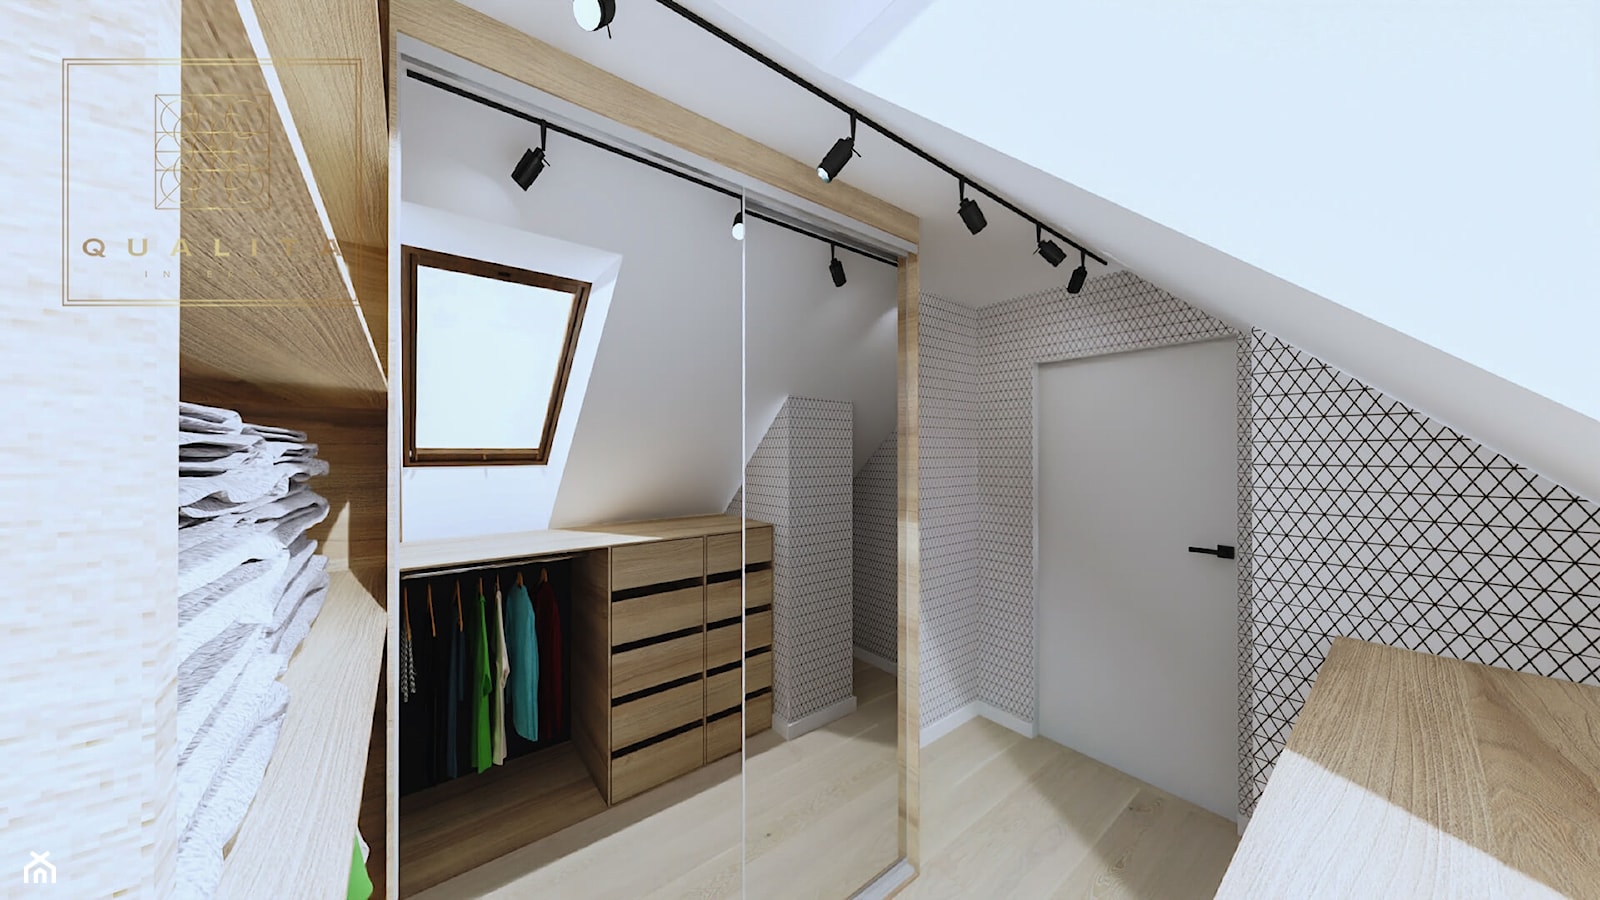 Garderoba w sypialni na poddaszu ze skosami - zdjęcie od Qualita Interno - Homebook